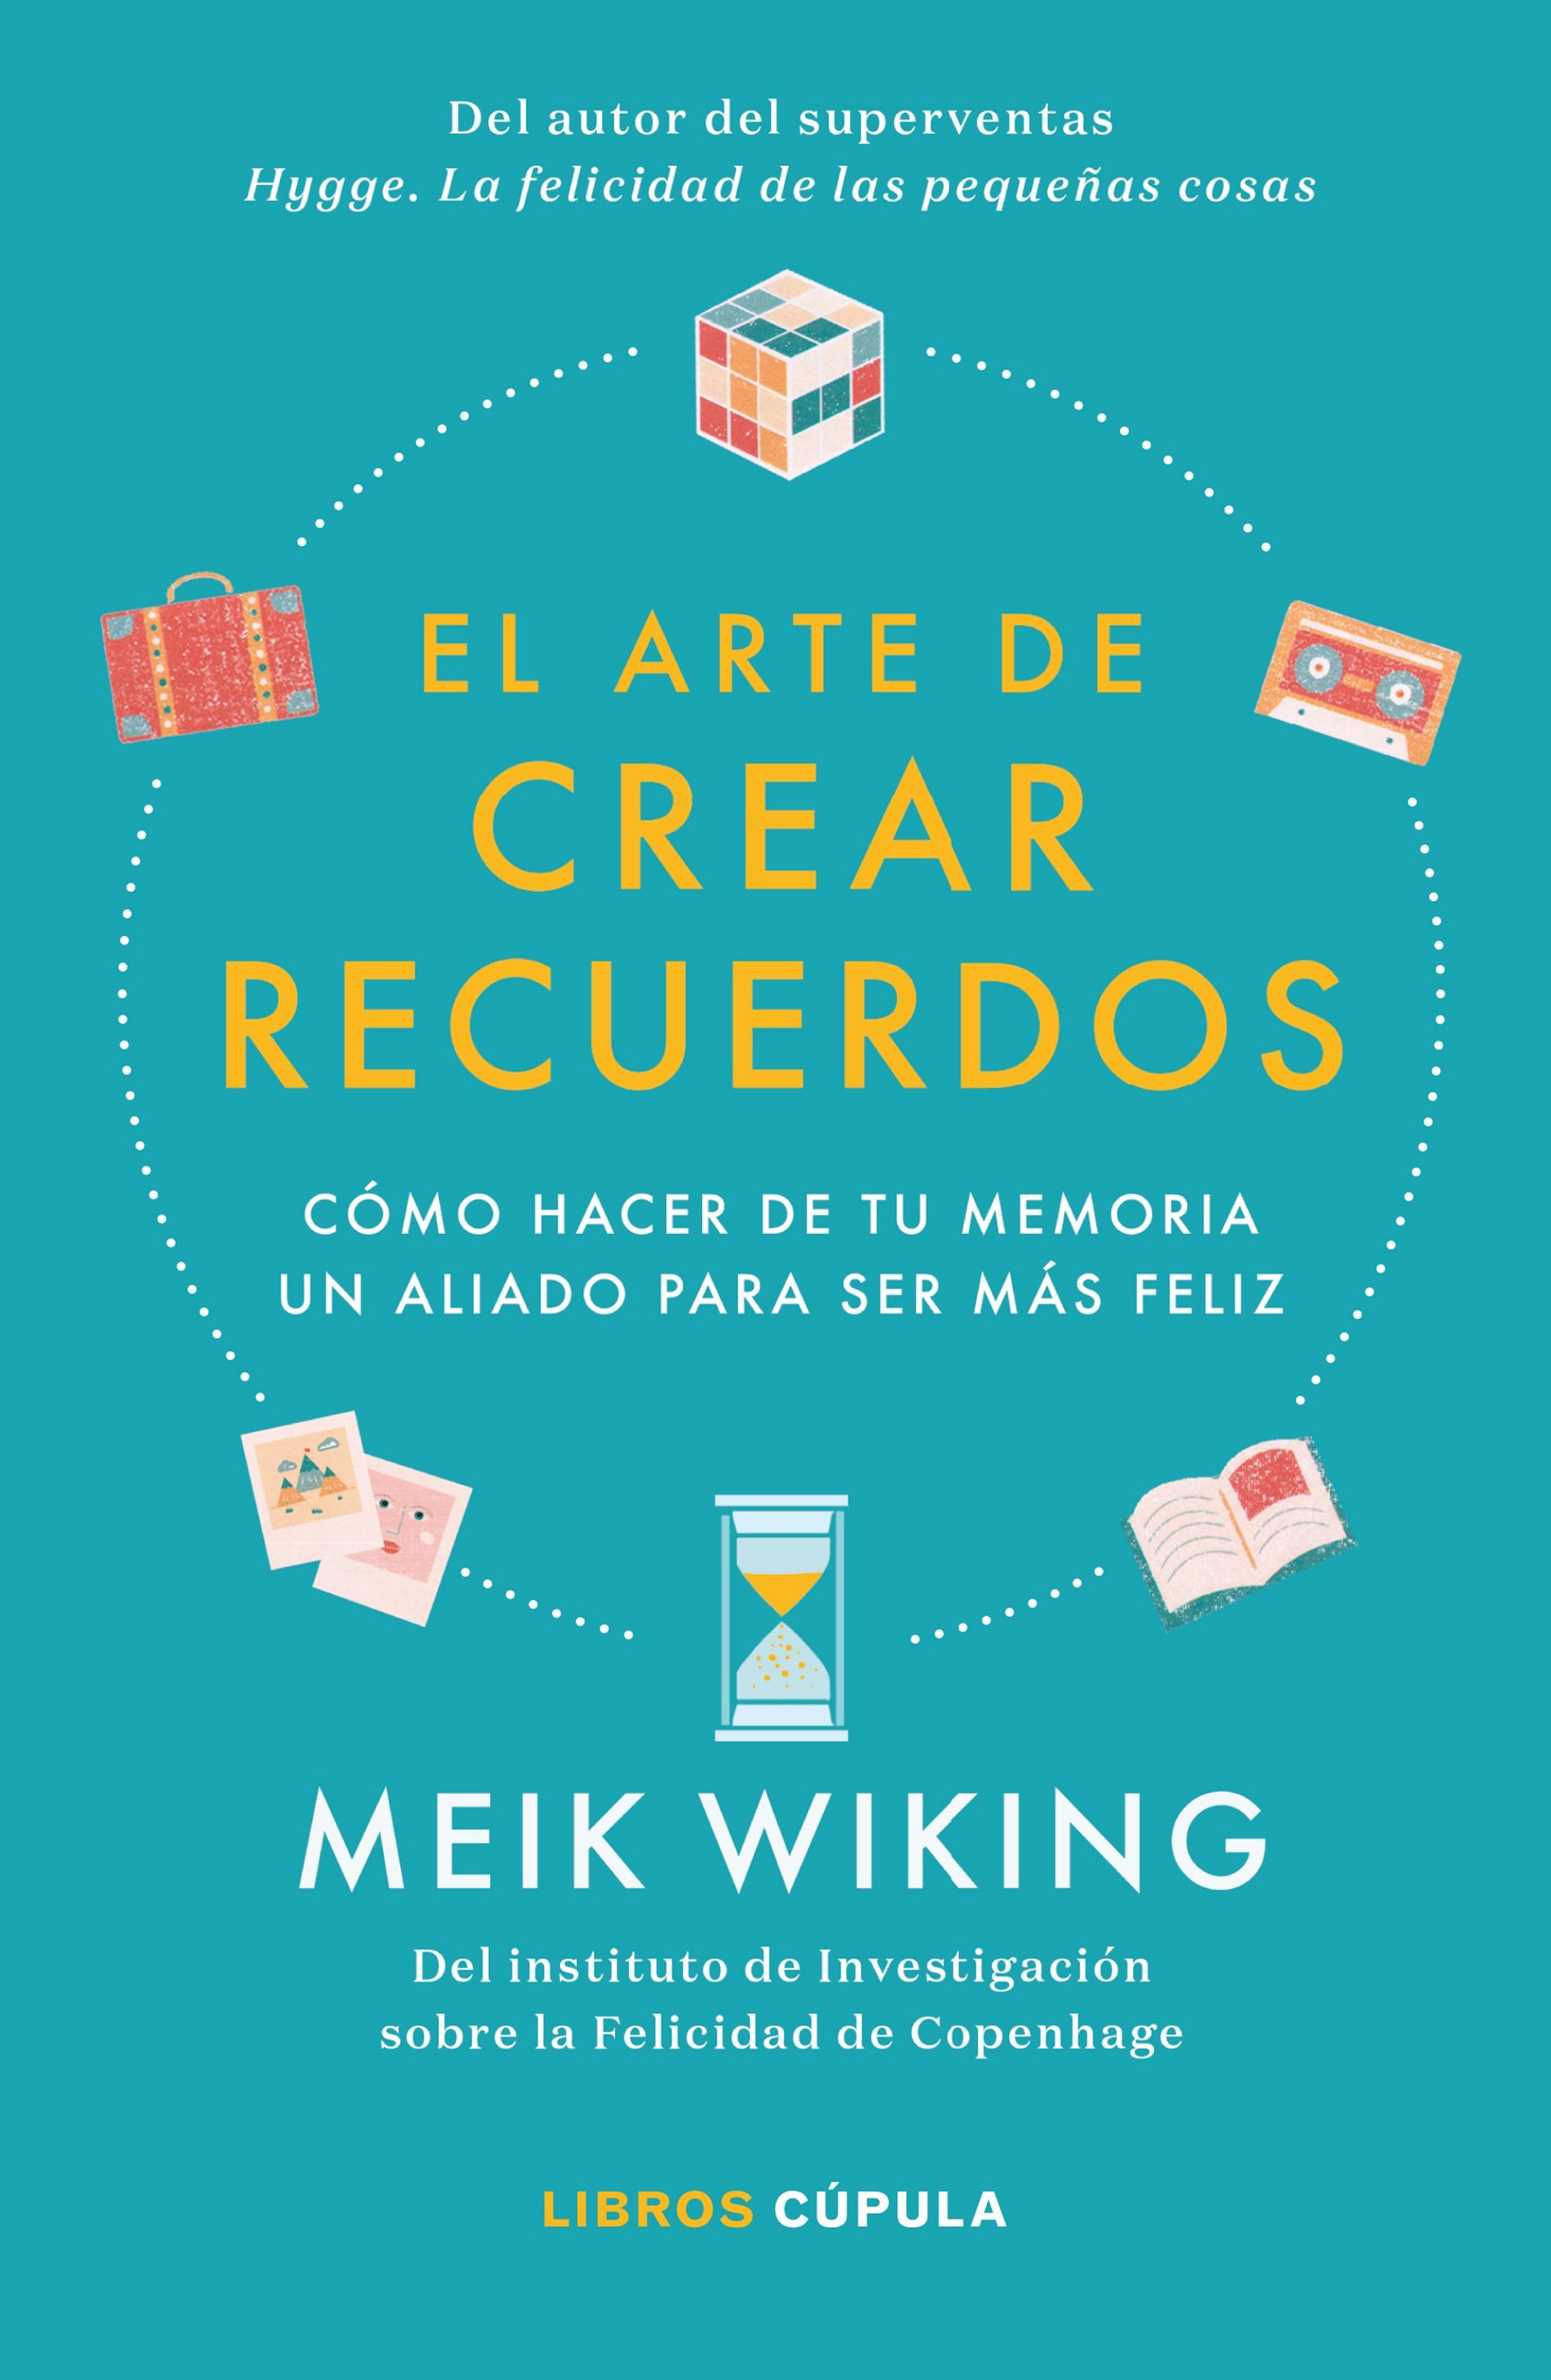 Meik Wiking publica ‘El arte de crear recuerdos'